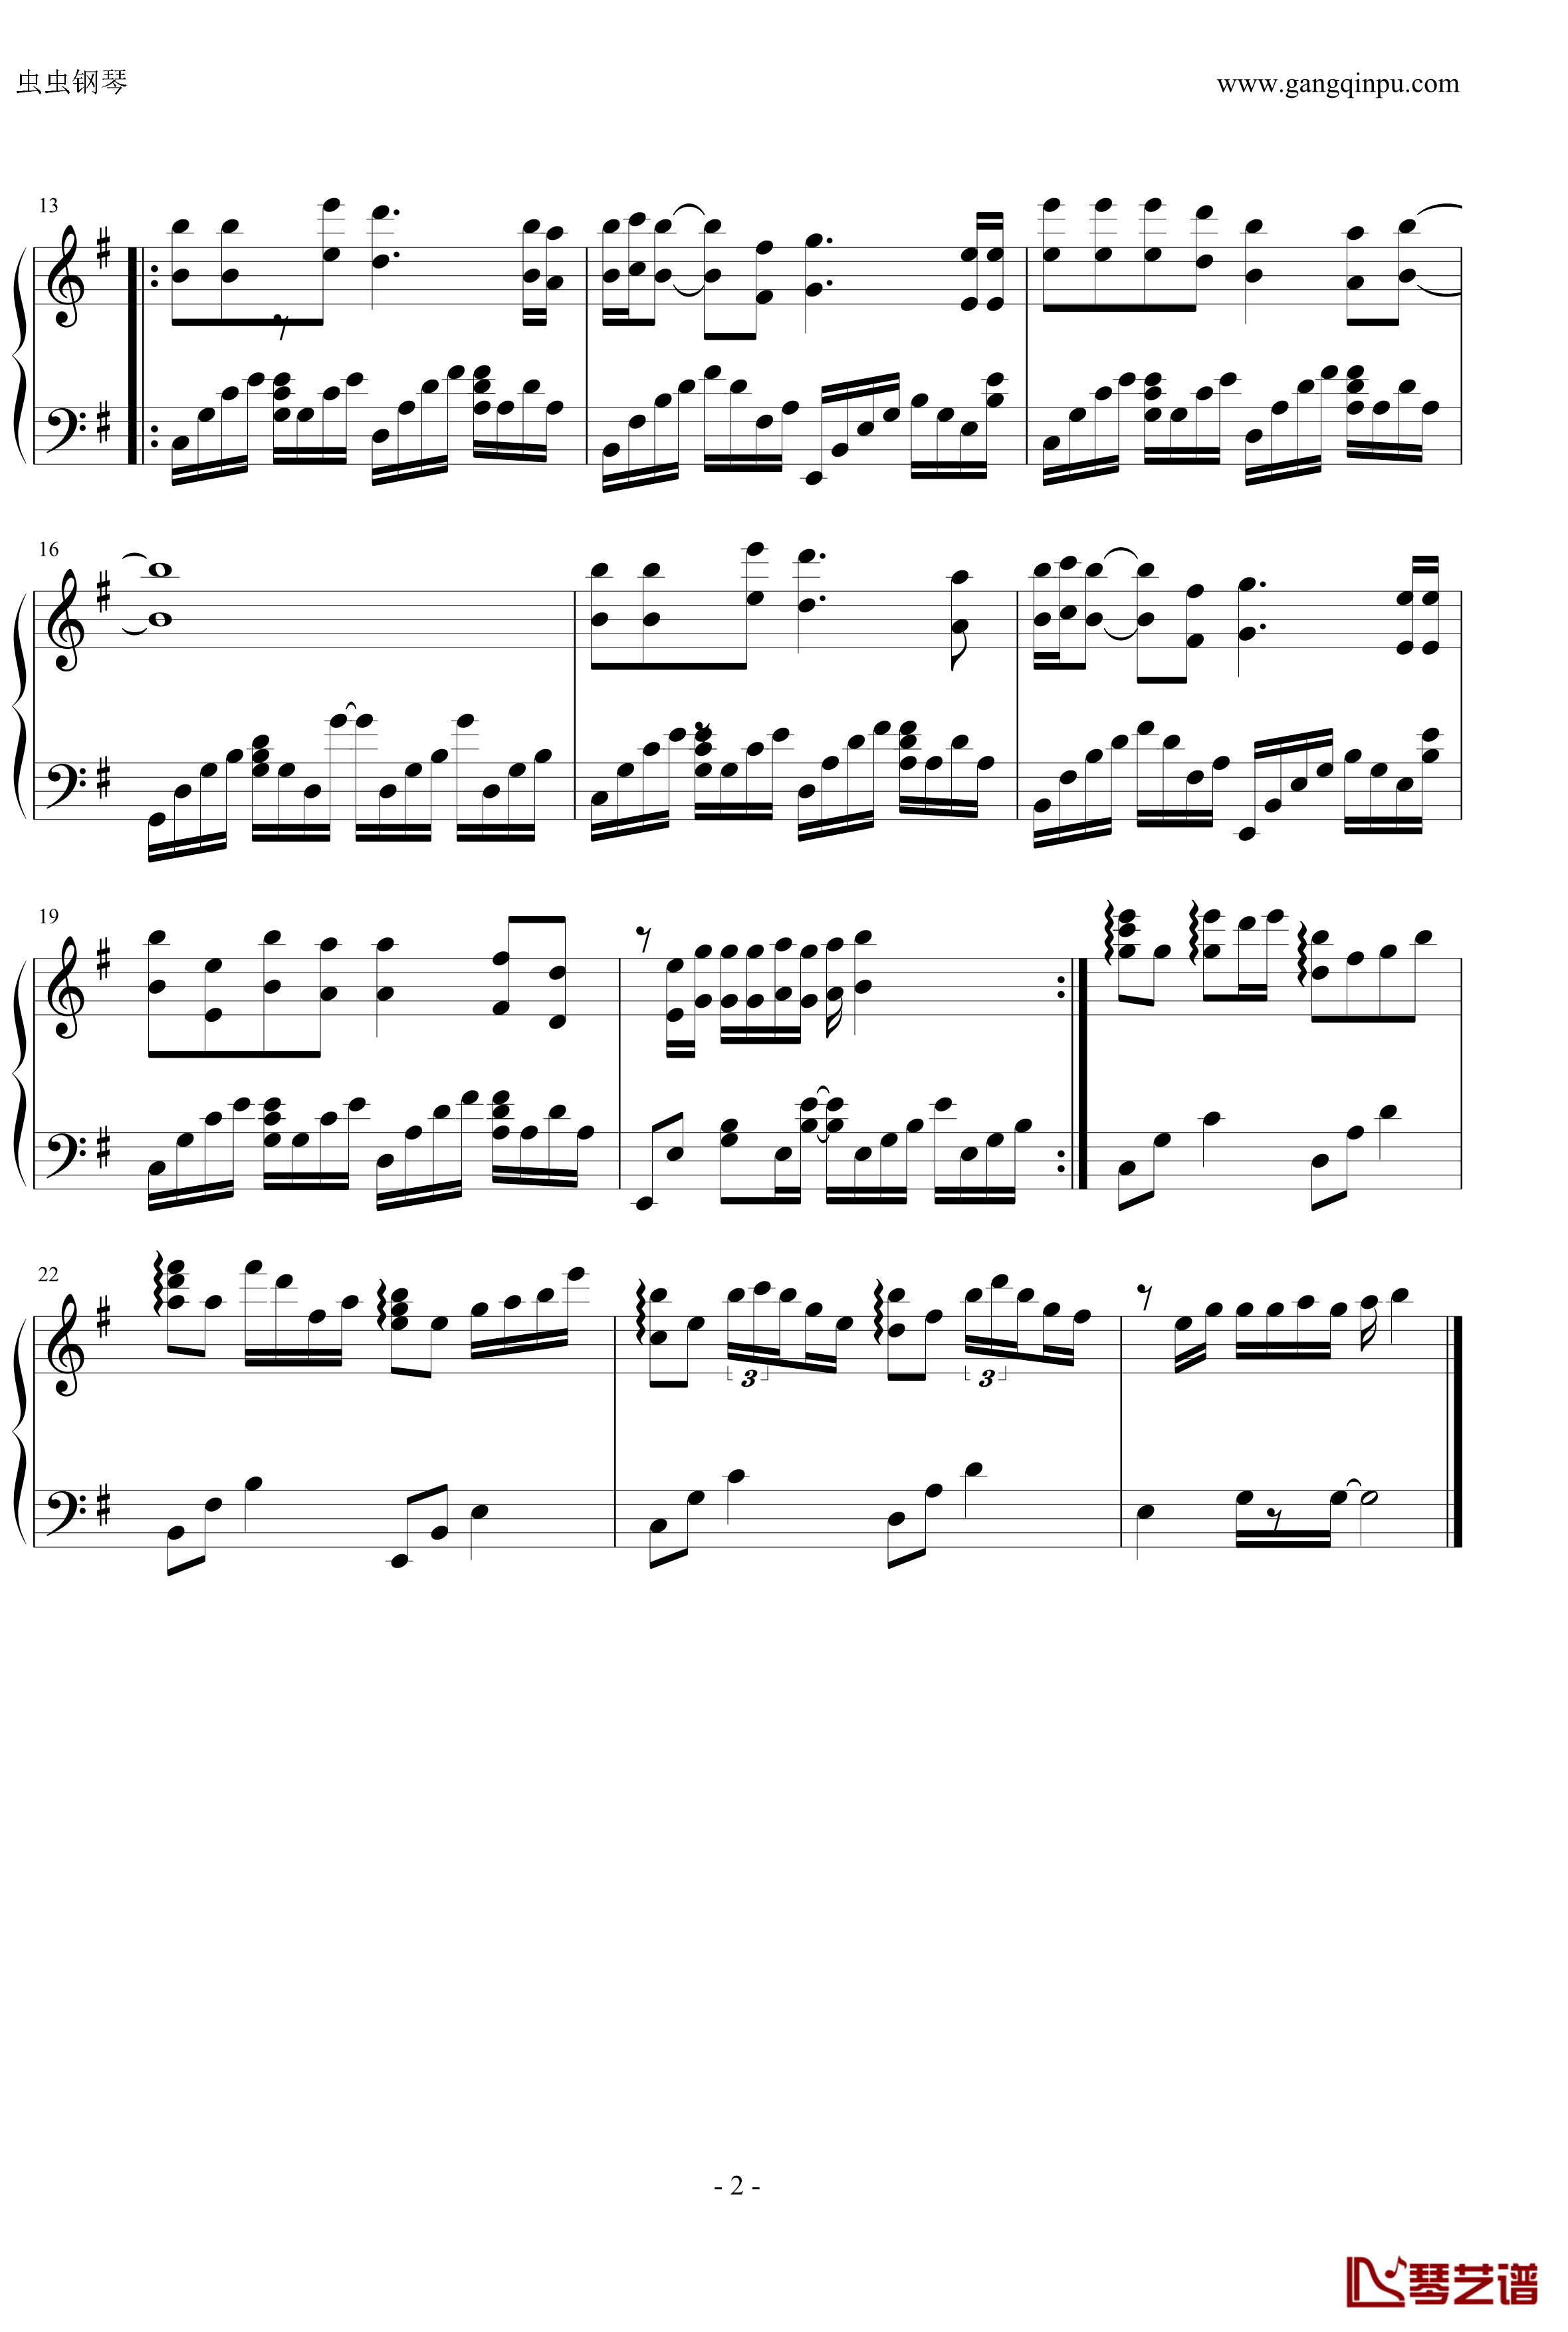 斑马斑马钢琴谱-独奏版-宋东野2